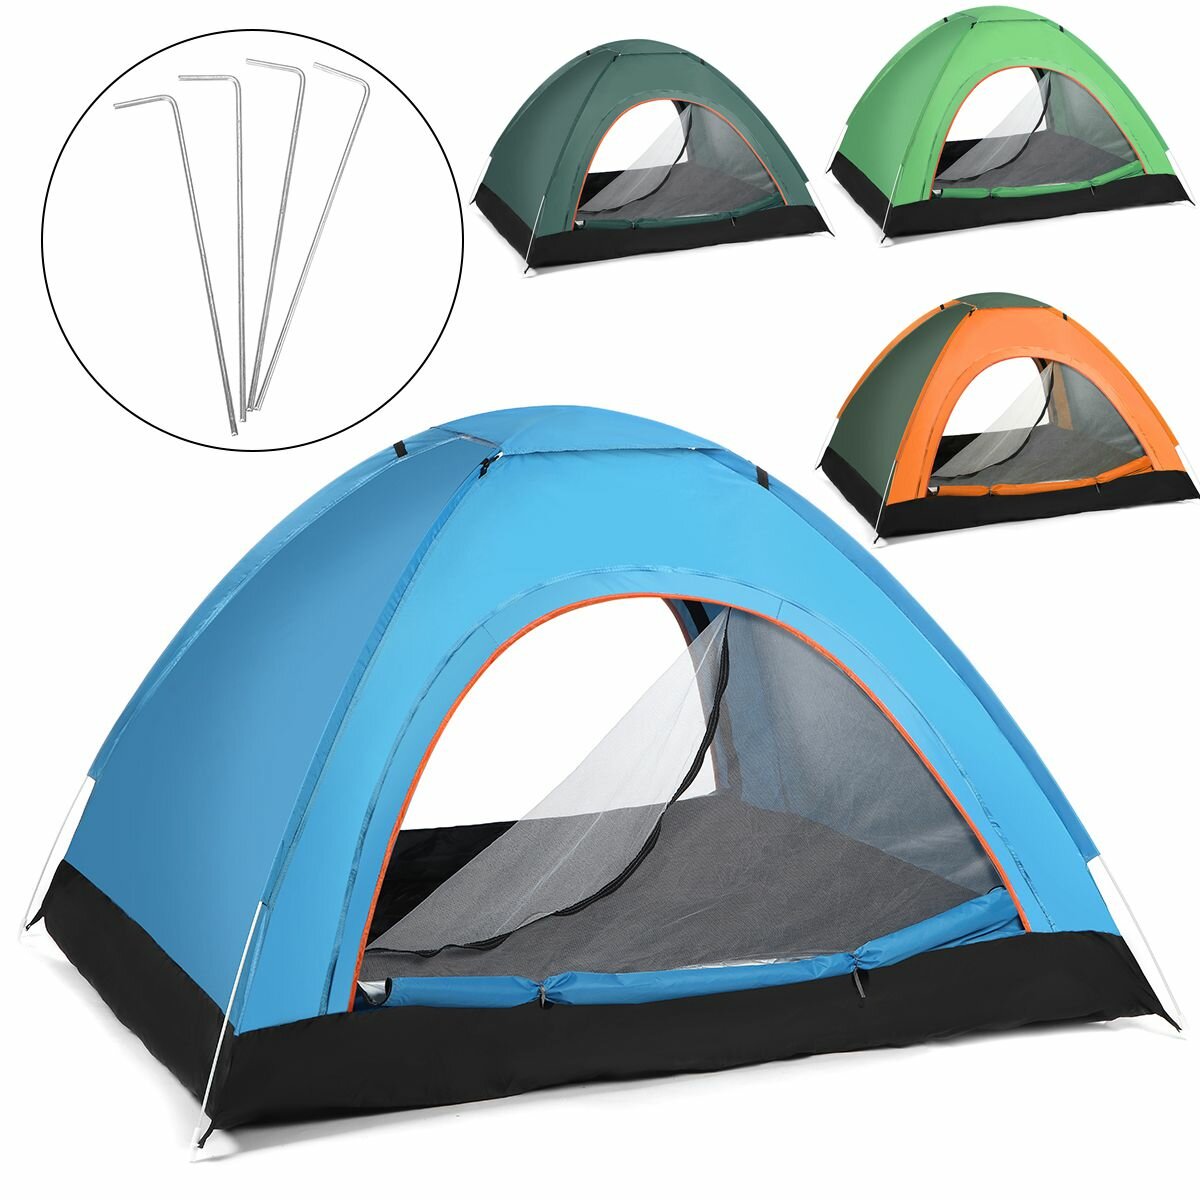 Tenda da campeggio per 2-3 persone completamente automatica, antivento, impermeabile e anti-UV per viaggi all'aperto, escursioni e spiaggia.